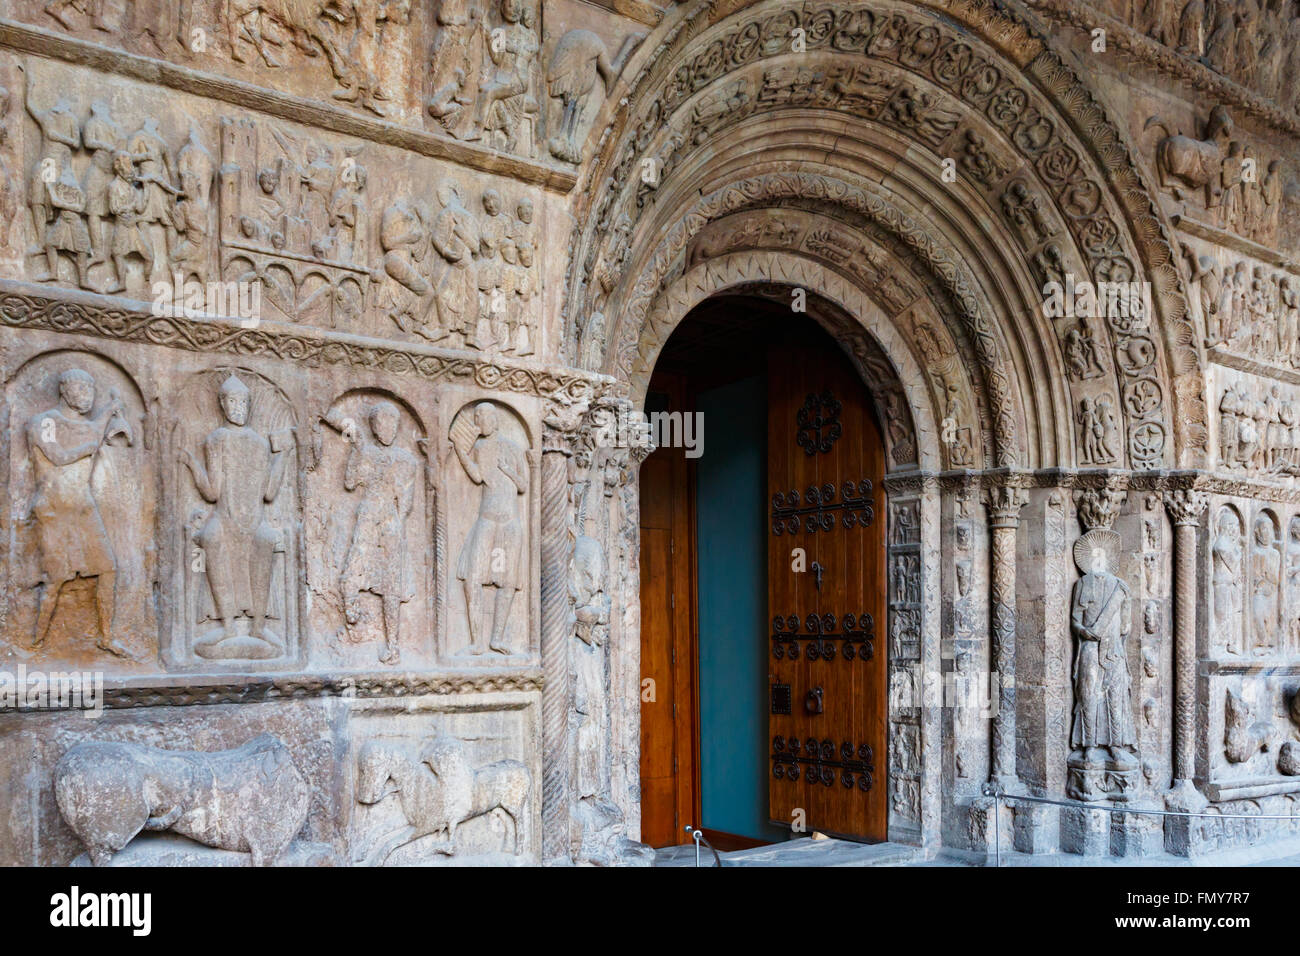 Ripoll, Provinz Girona, Katalonien, Spanien.  Monastir oder Kloster, de Santa Maria.  Das romanische Portal.  Bibel aus Stein. Stockfoto